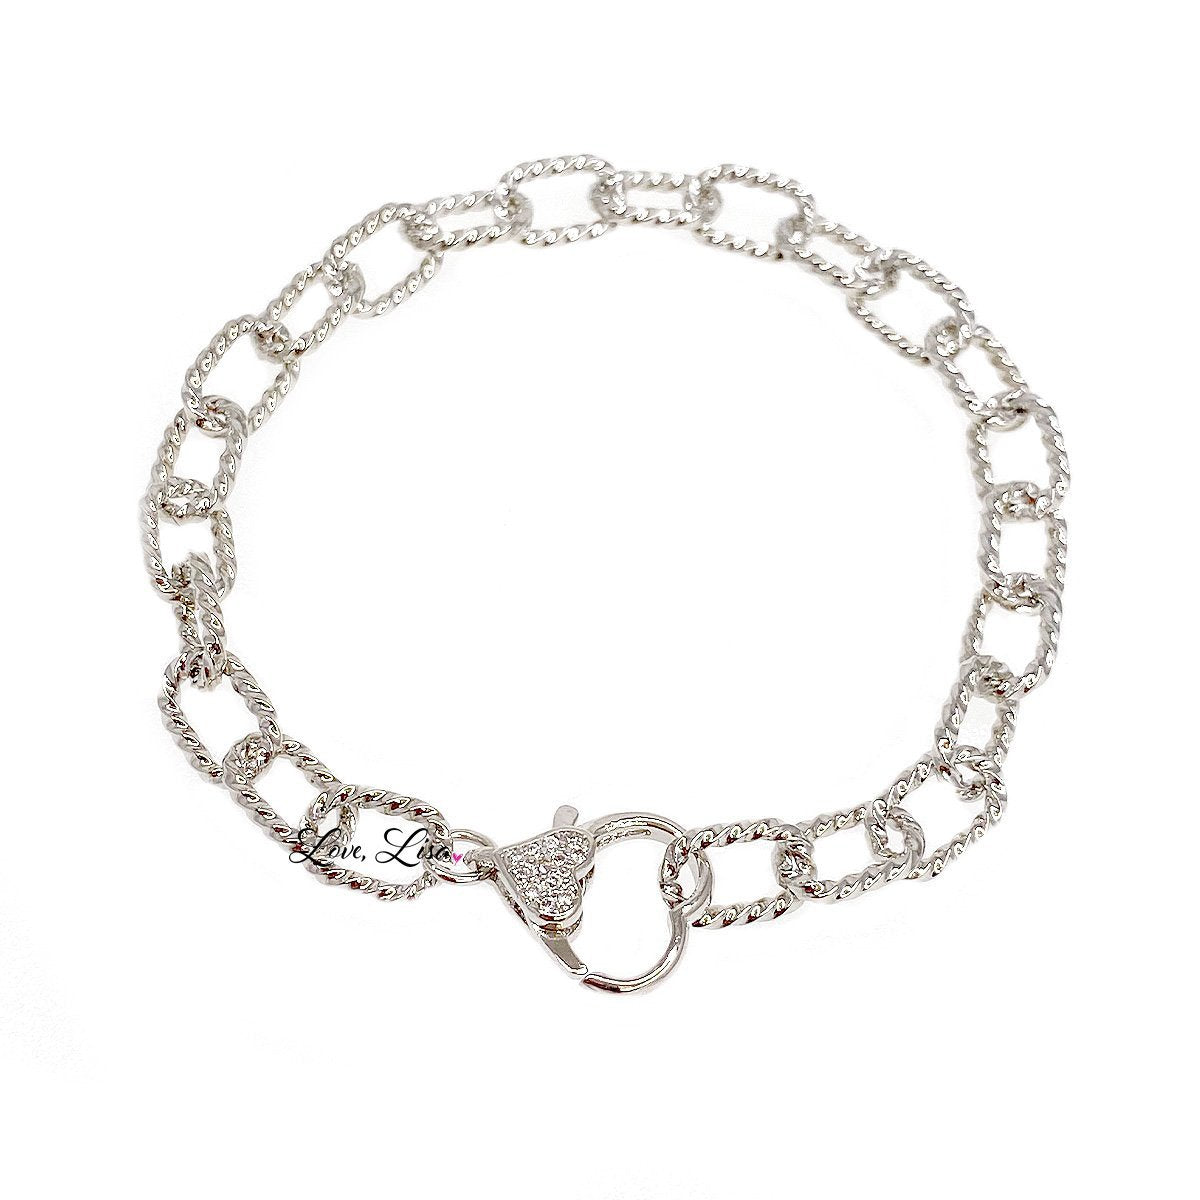 Lisa's Delicate Heart Rope Chain Bracelet